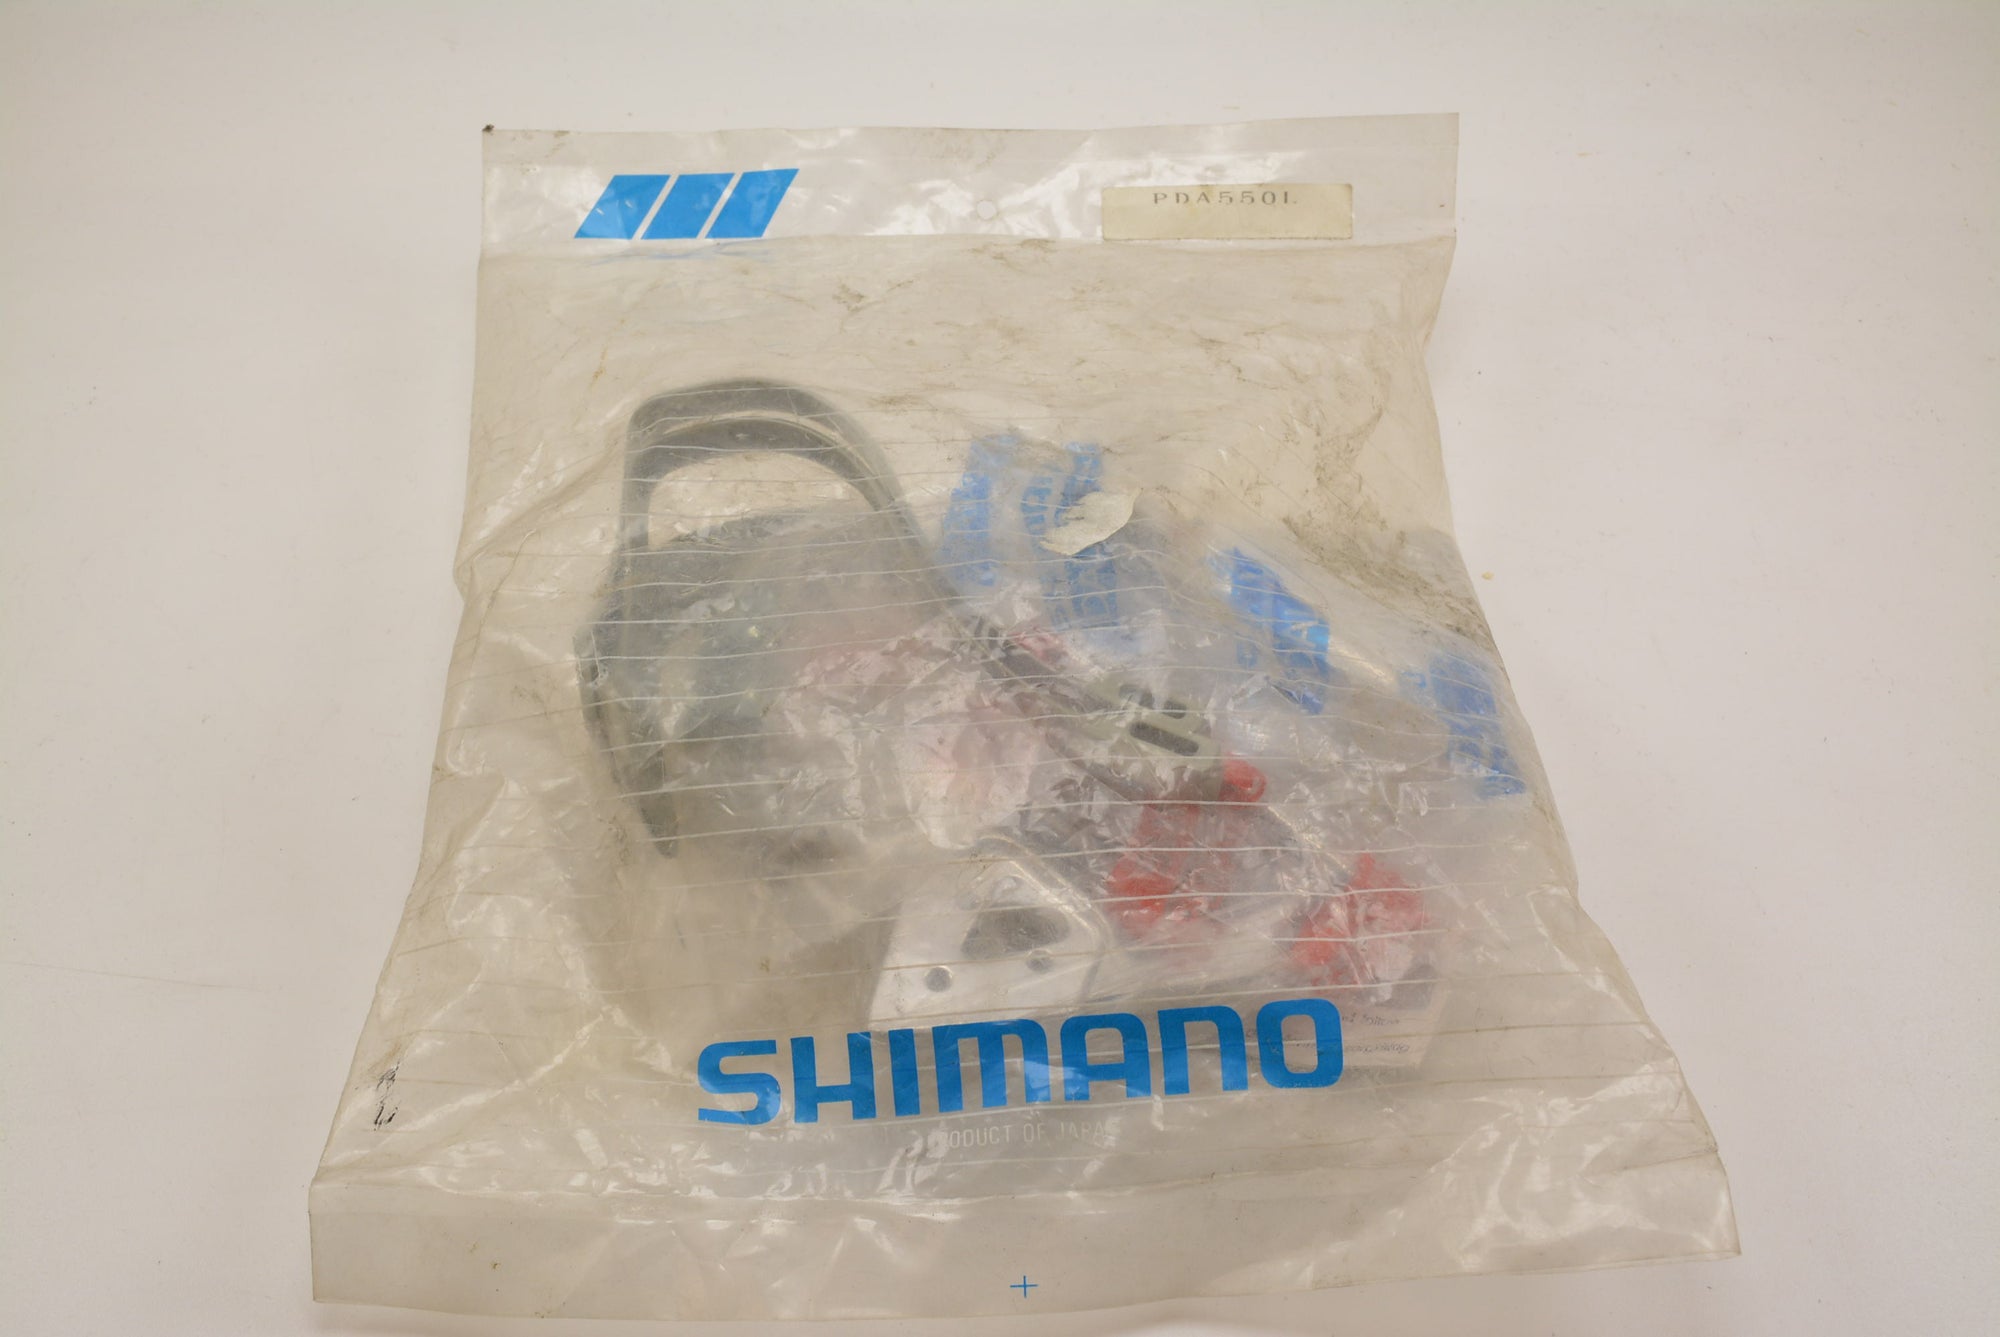 Shimano PD-A550 Pedale mit Shimano Pedalhaken NIB